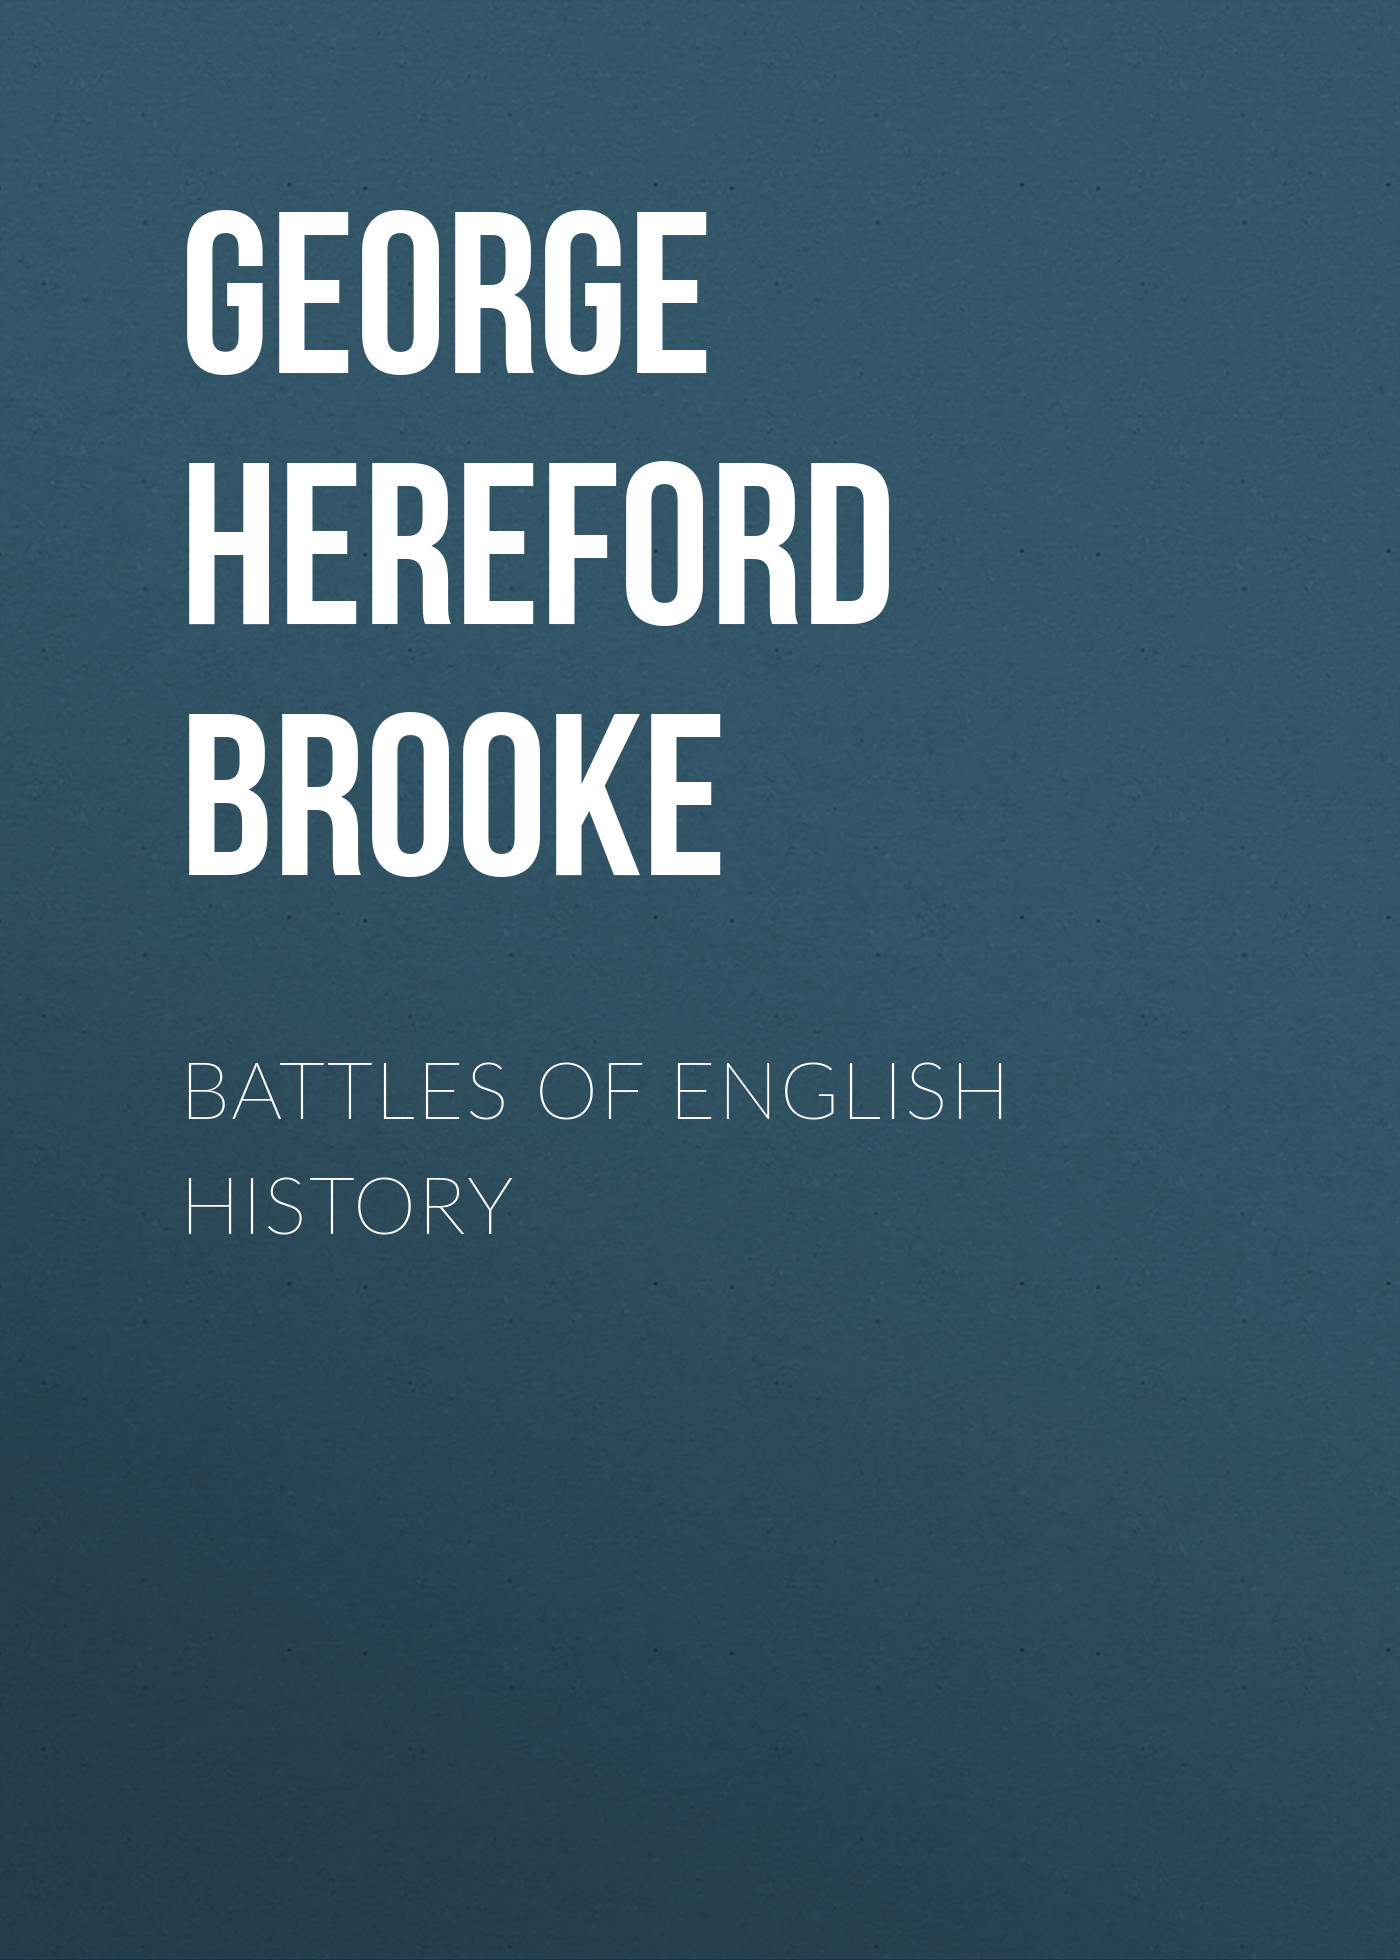 Книга Battles of English History из серии , созданная Hereford George, может относится к жанру Зарубежная старинная литература, Зарубежная классика. Стоимость электронной книги Battles of English History с идентификатором 24937757 составляет 0 руб.